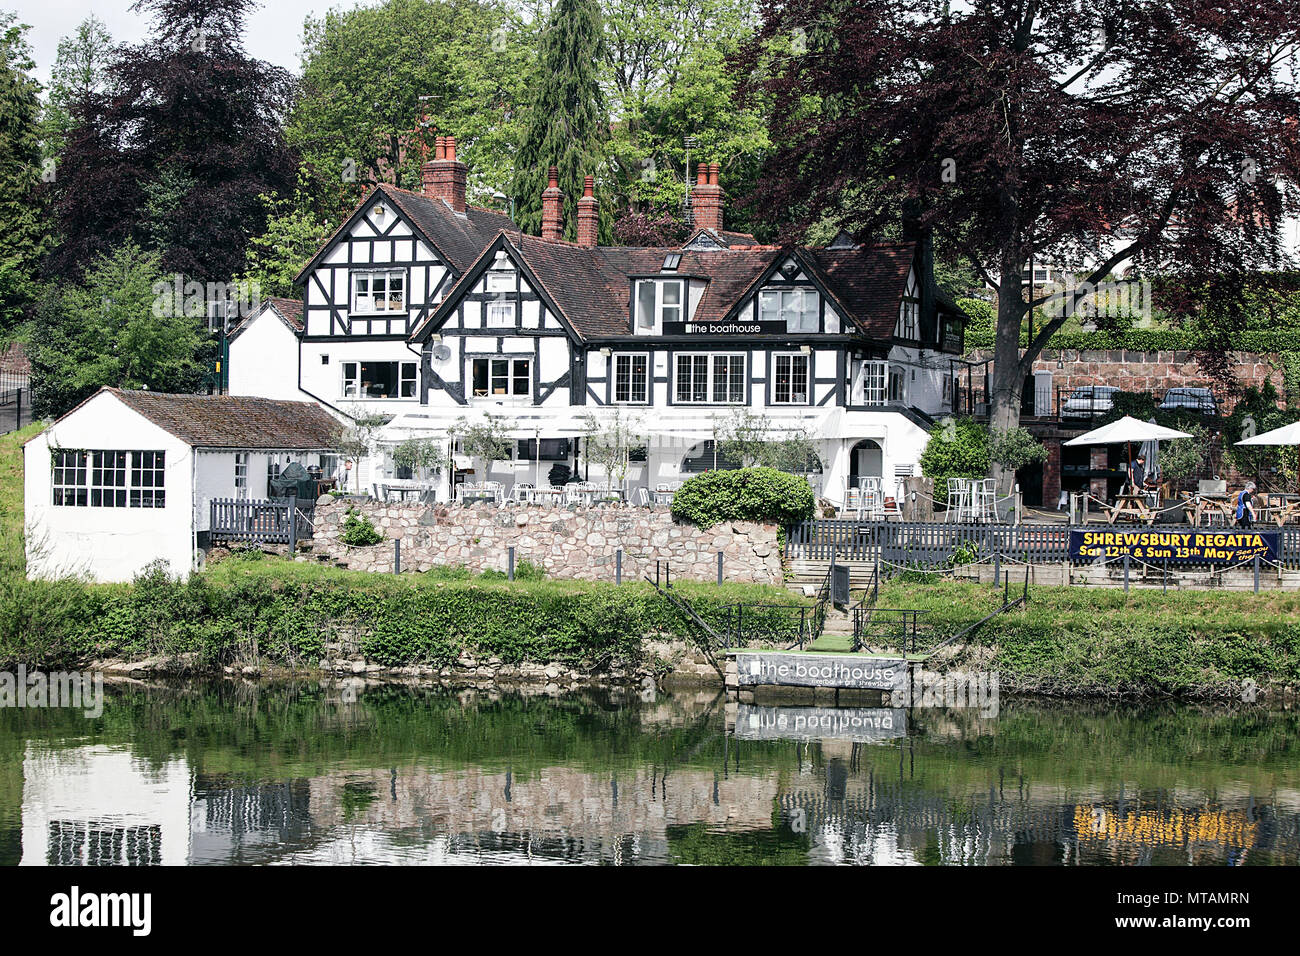 Le Boathouse public house à Shrewsbury situé le long des rives de la rivière Severn à Shrewsbury, en Angleterre. Banque D'Images